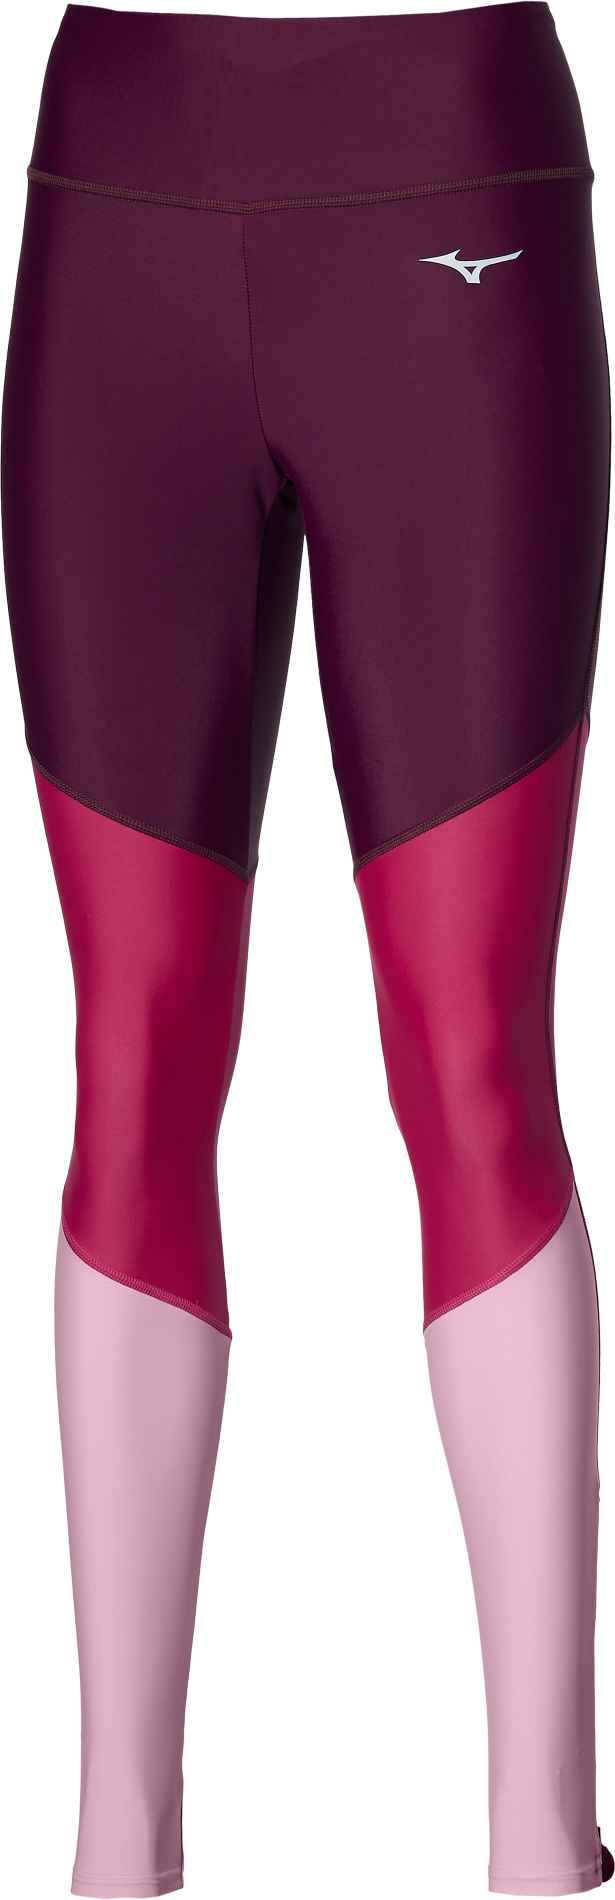 Pantaloni elastici pentru jogging femei